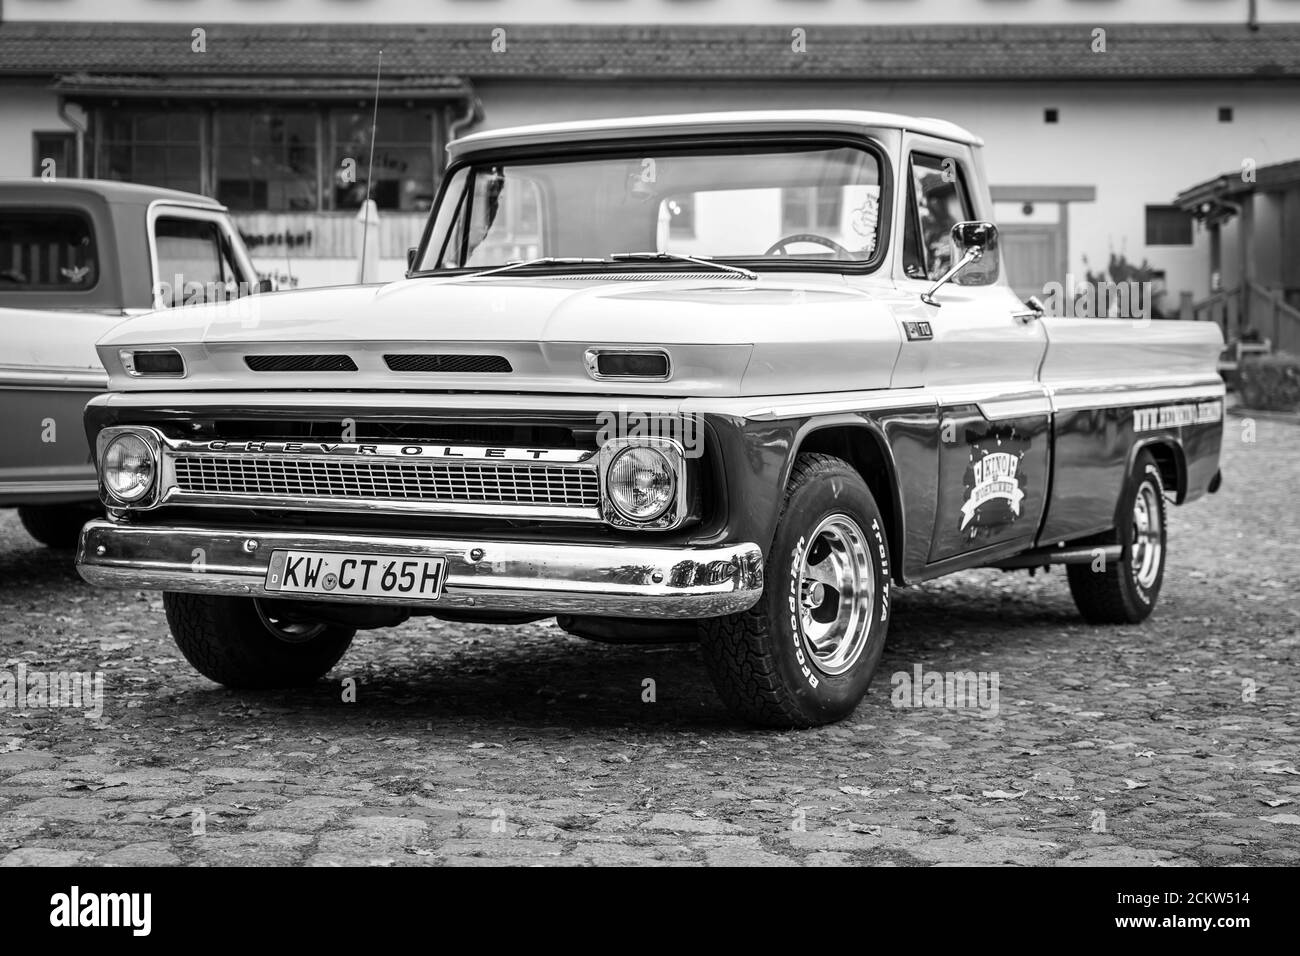 DIEDERSDORF, ALEMANIA - 30 DE AGOSTO de 2020: La camioneta Chevrolet C10 de tamaño completo, 1965. Blanco y negro. La exposición de "US Car Classics". Foto de stock